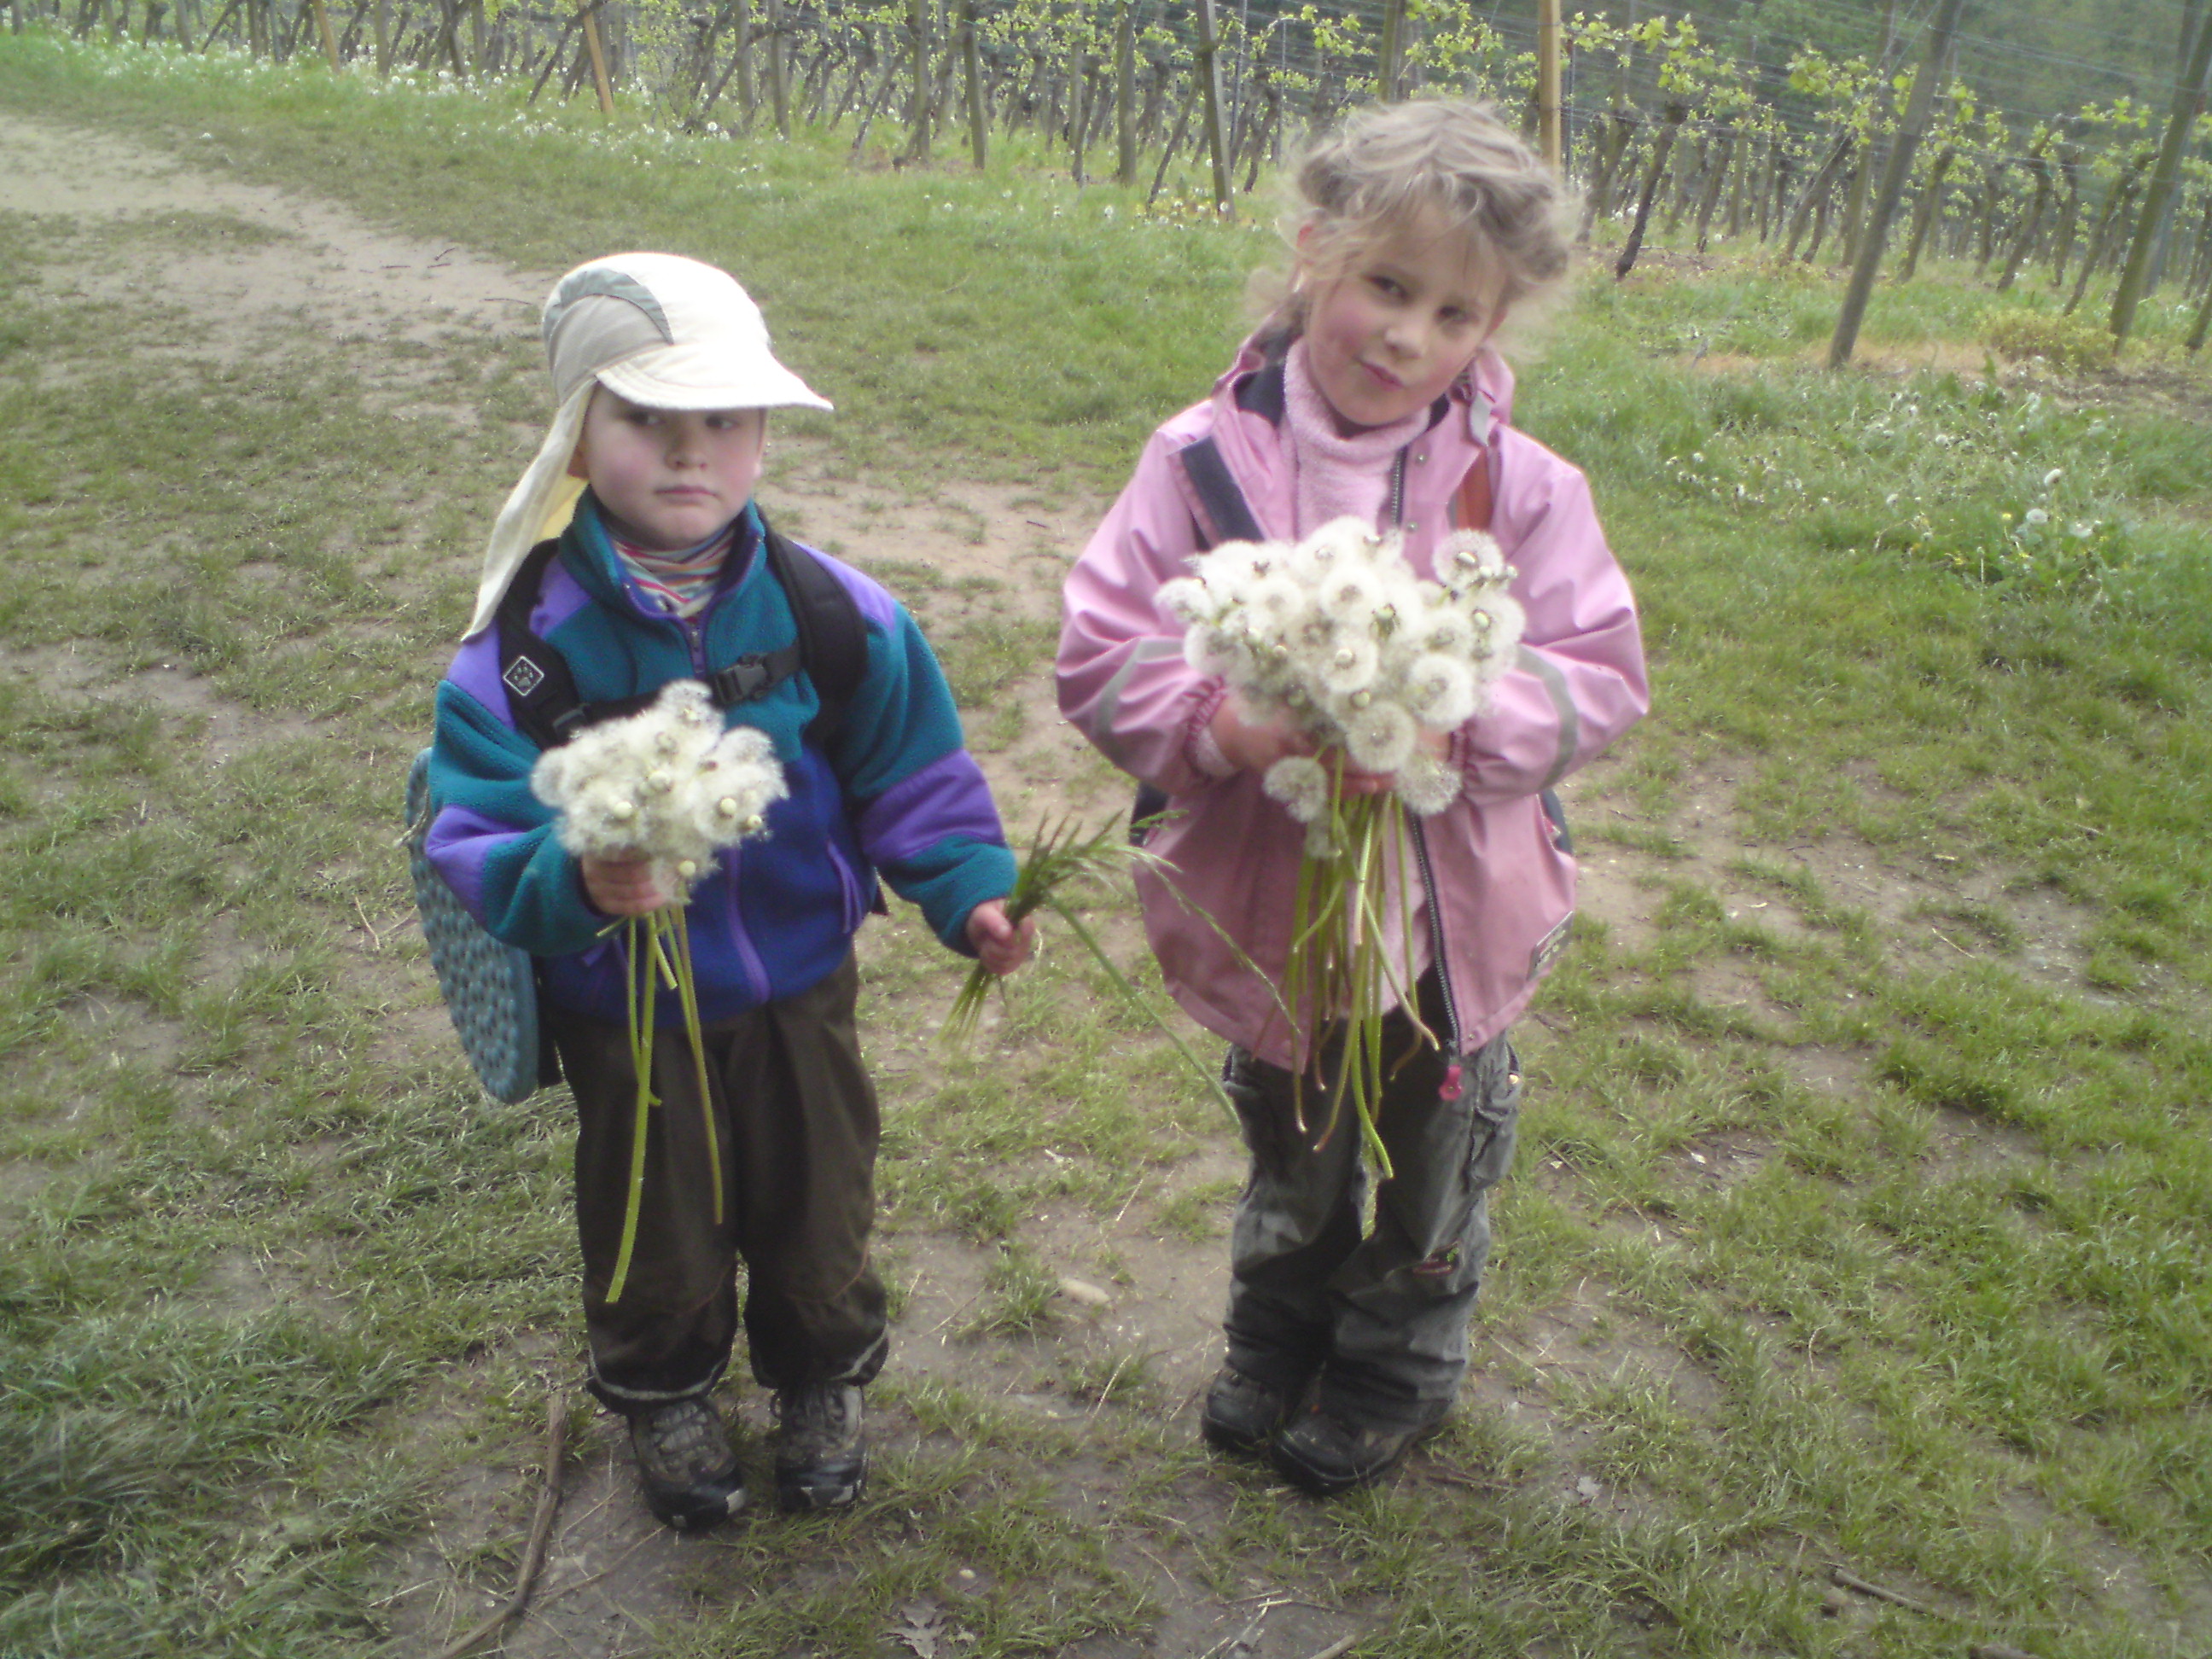 Ook in Duitsland wordt Moeder op moederdag met bloemen verwend. Een meisje plukt met haar broertje uitgebloeide paardebloemen tussen de wijngarden van Fürstenlager 